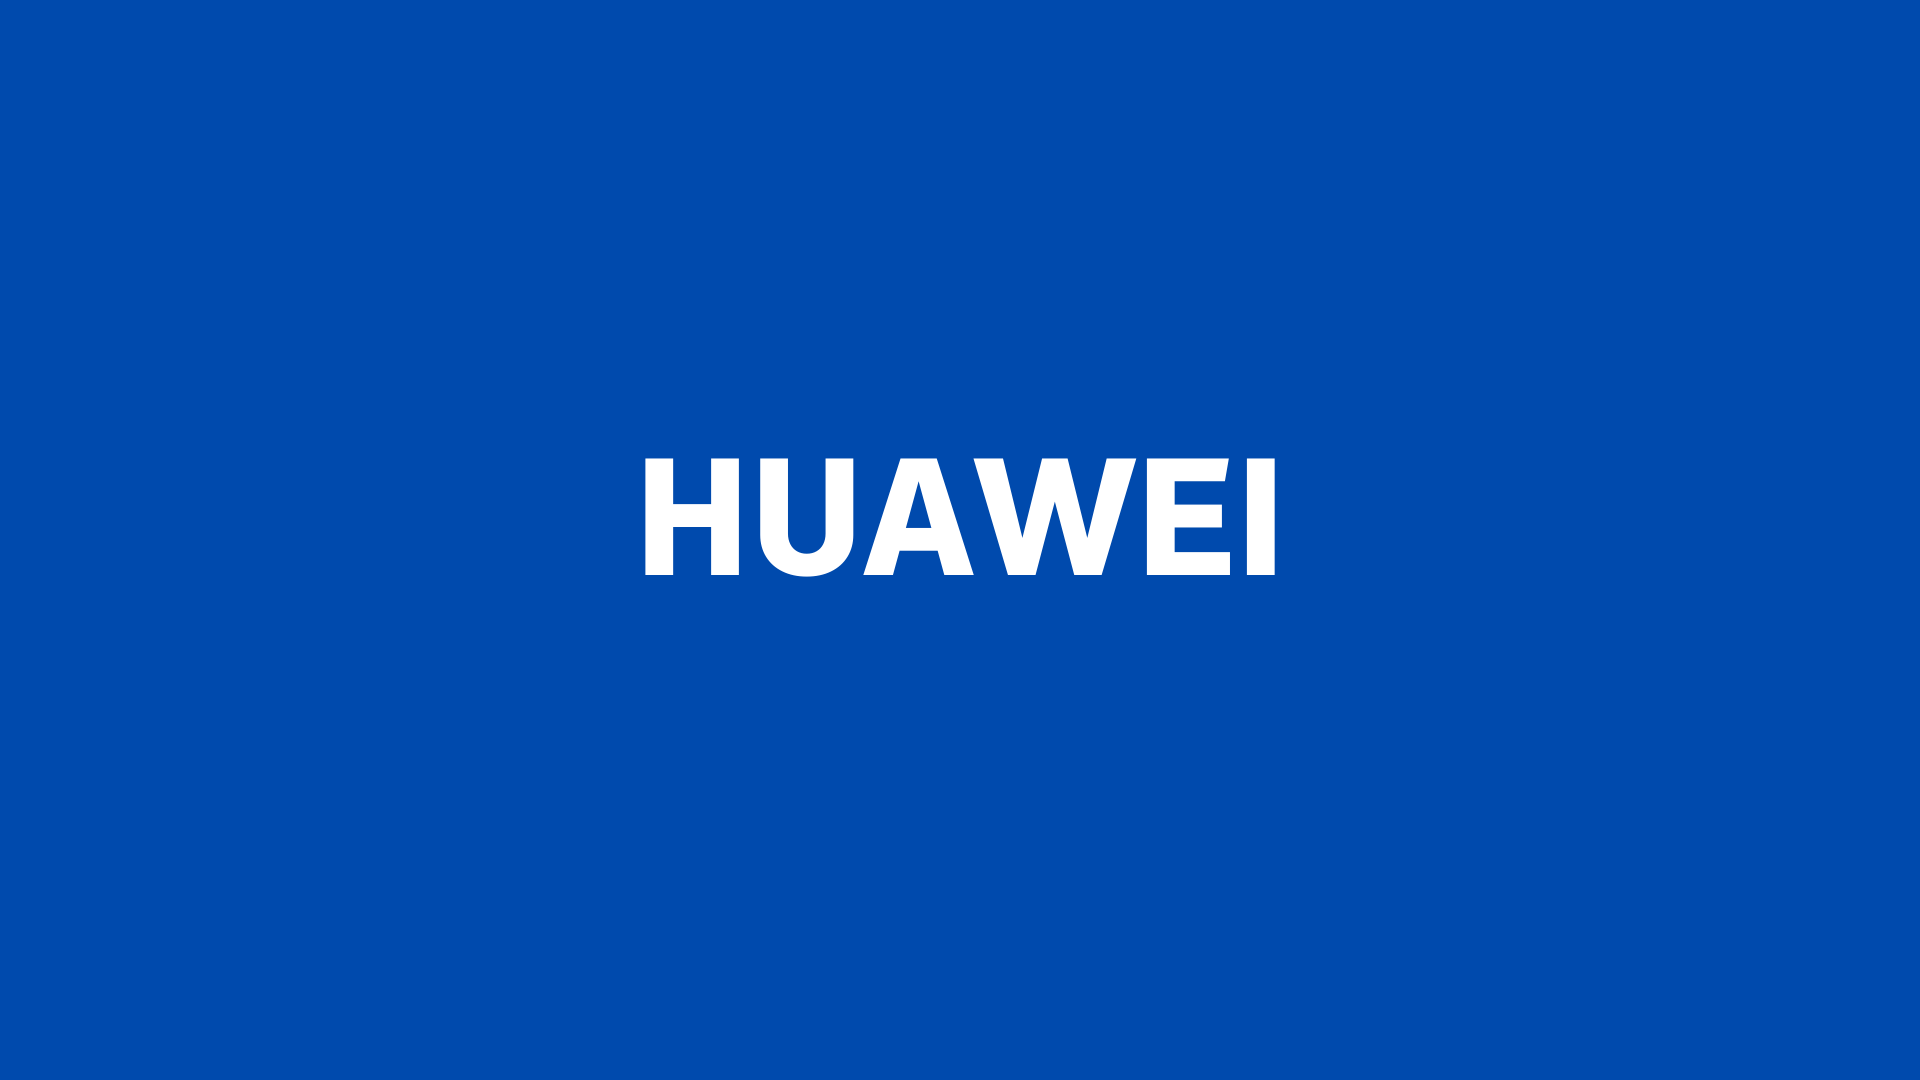 Huawei 1920x1080